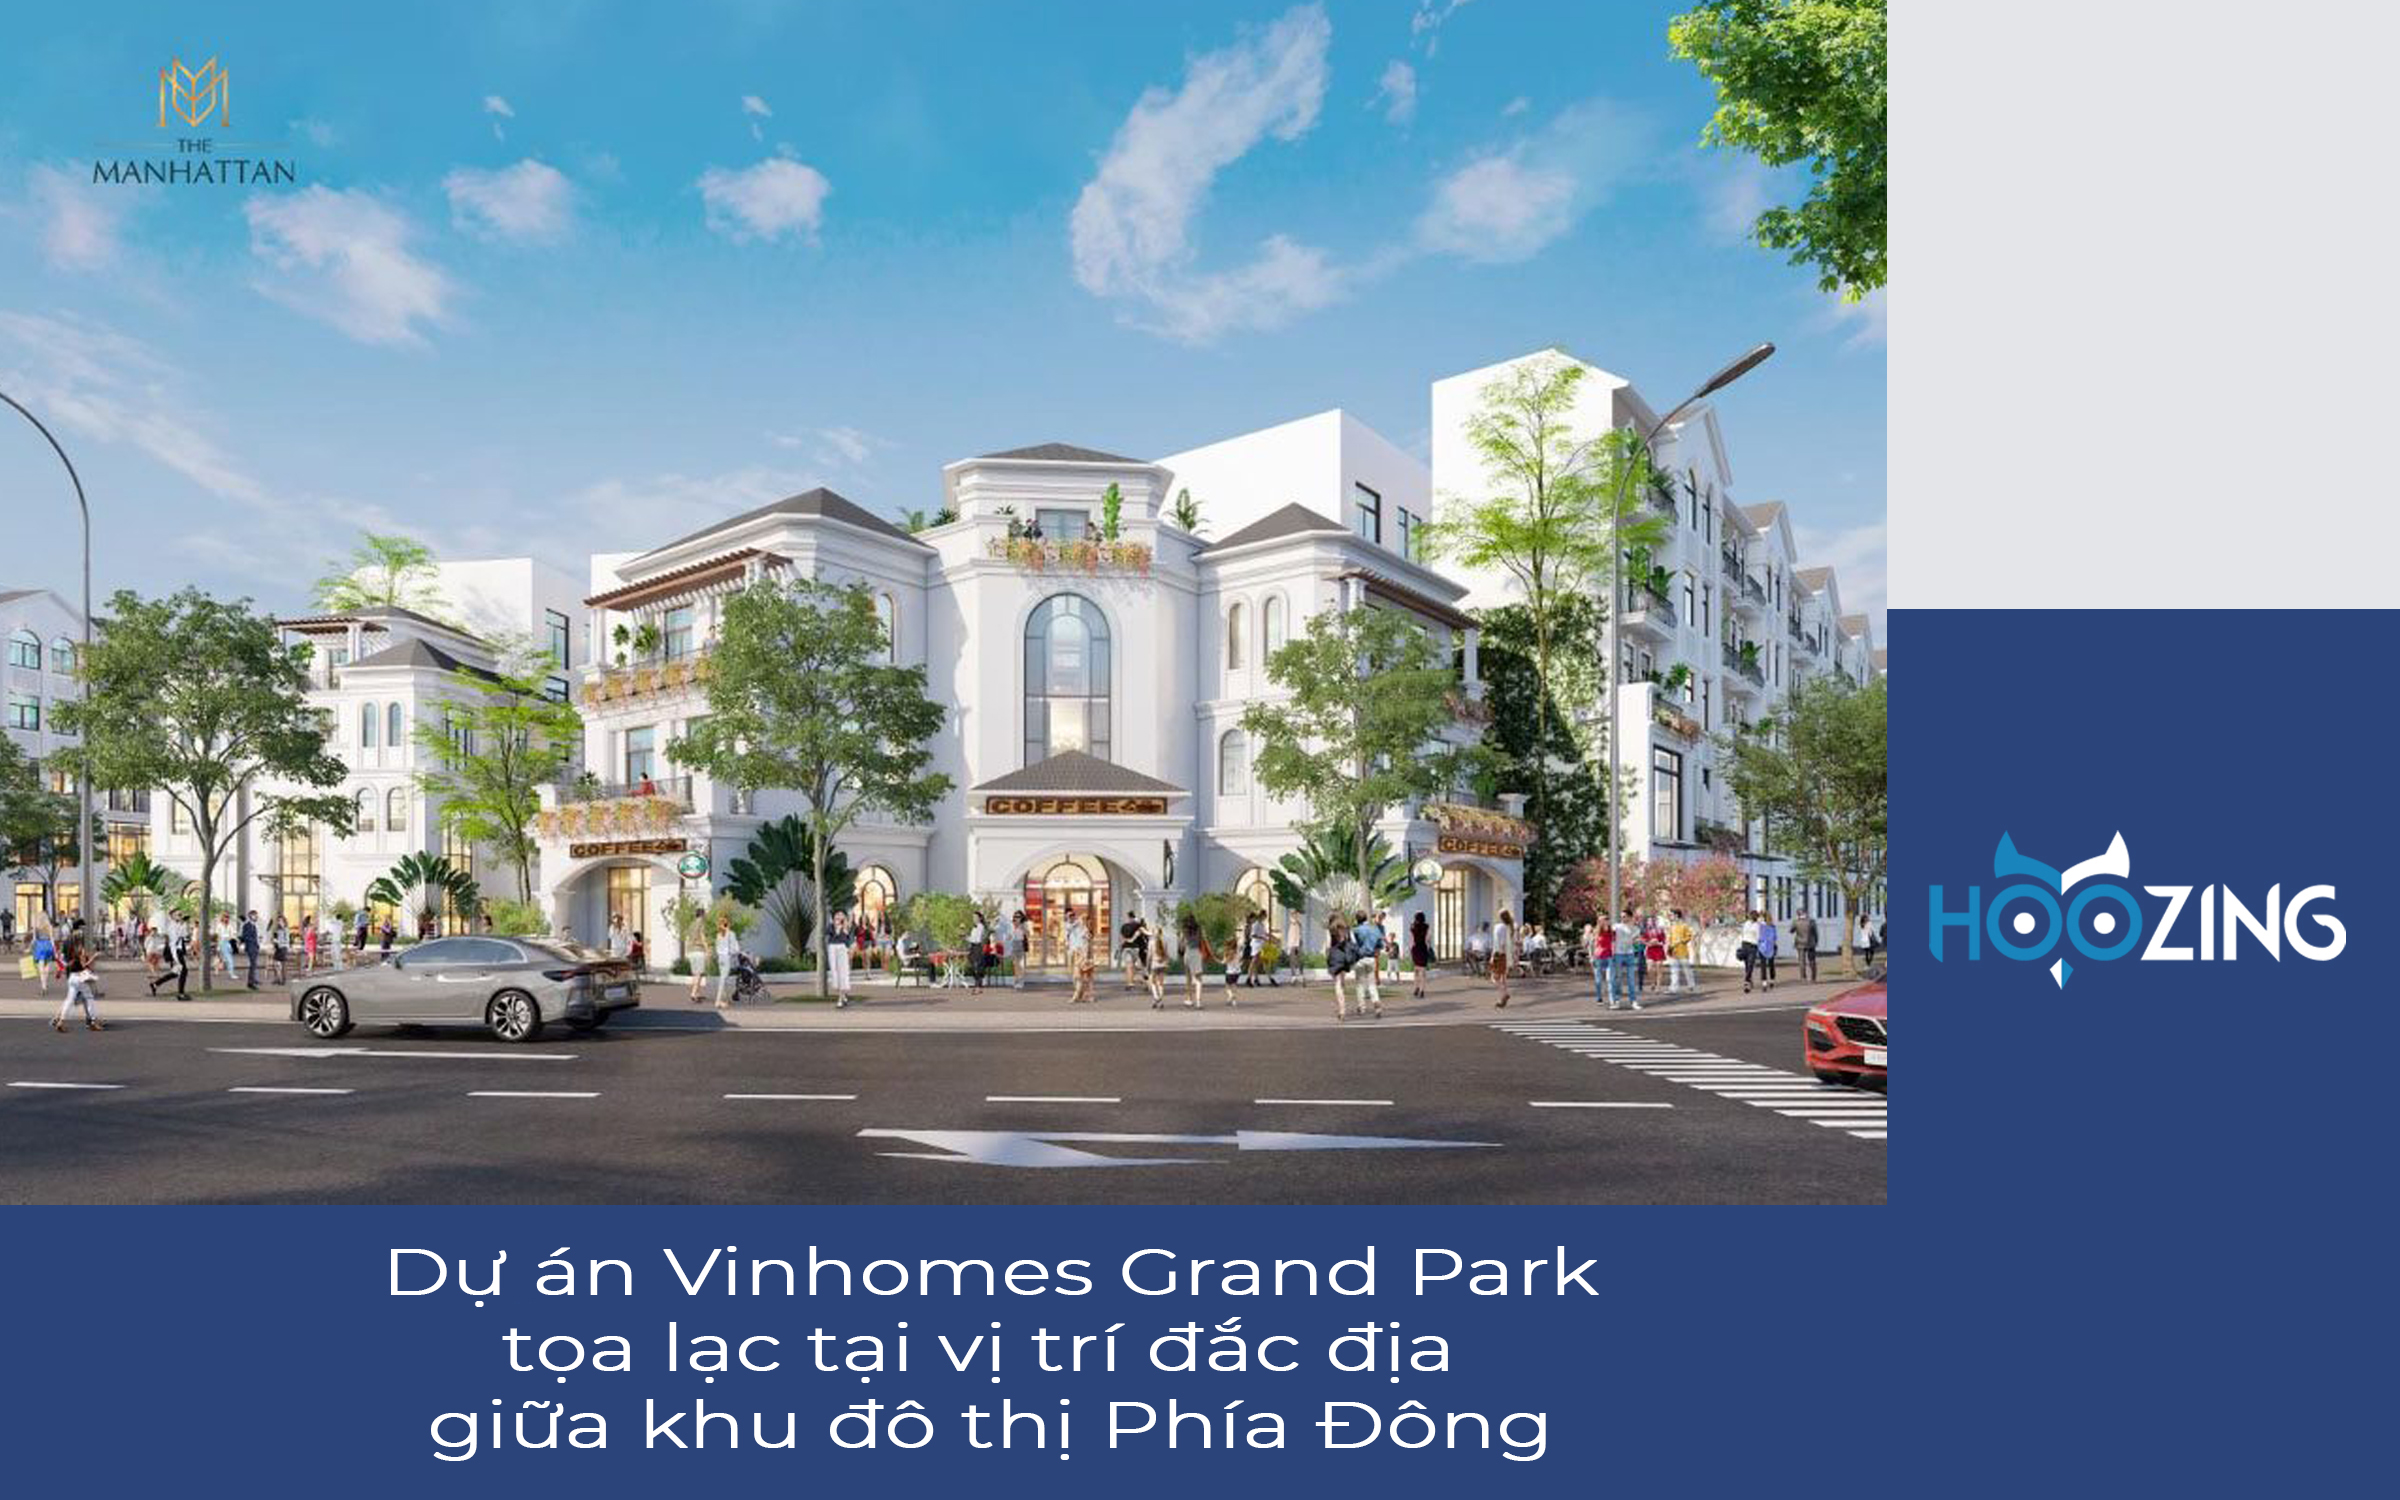 Dự án Vinhomes Grand Park tọa lạc tại vị trí đắc địa giữa khu đô thị Phía Đông.